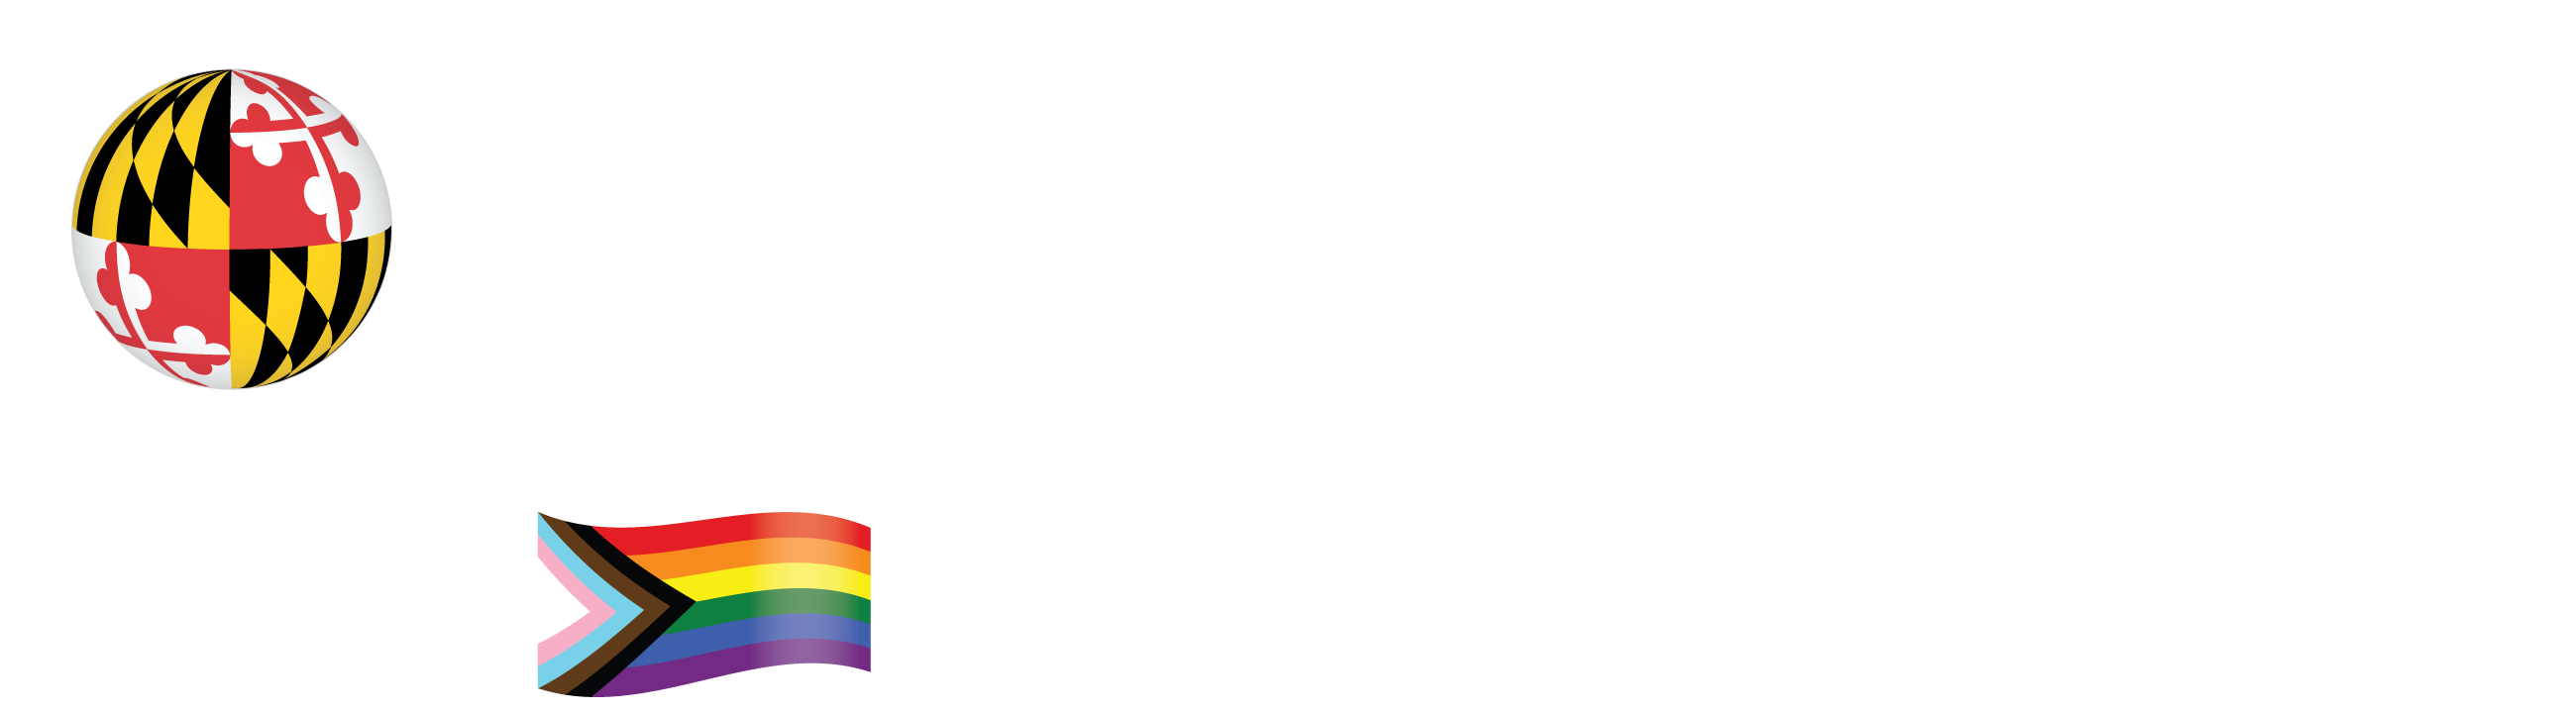 UMD College of Information Studies